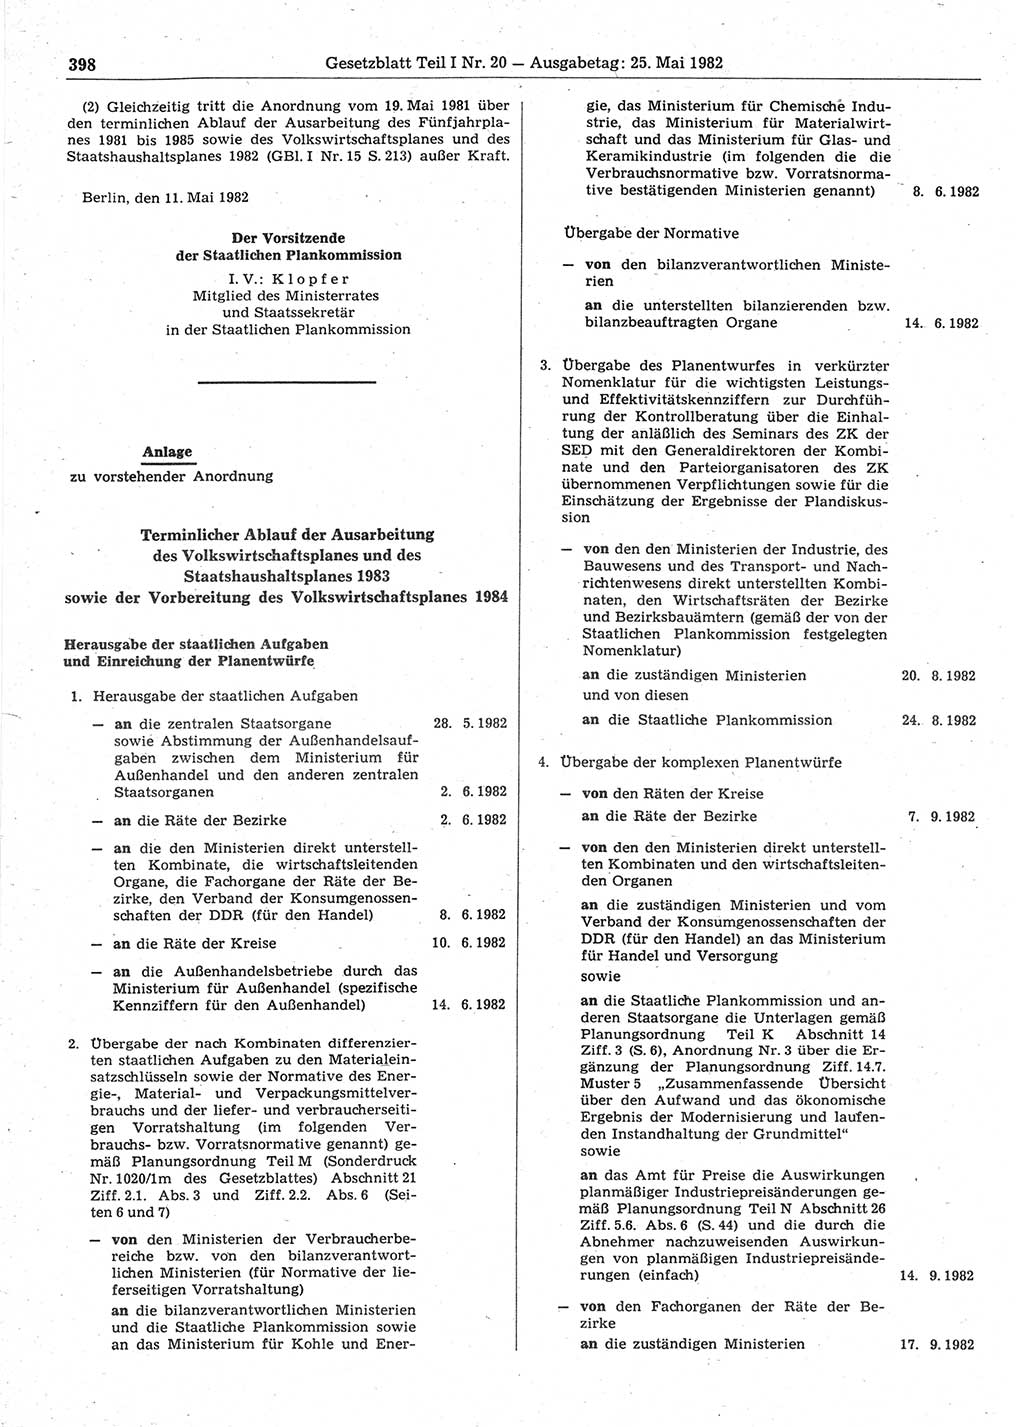 Gesetzblatt (GBl.) der Deutschen Demokratischen Republik (DDR) Teil Ⅰ 1982, Seite 398 (GBl. DDR Ⅰ 1982, S. 398)